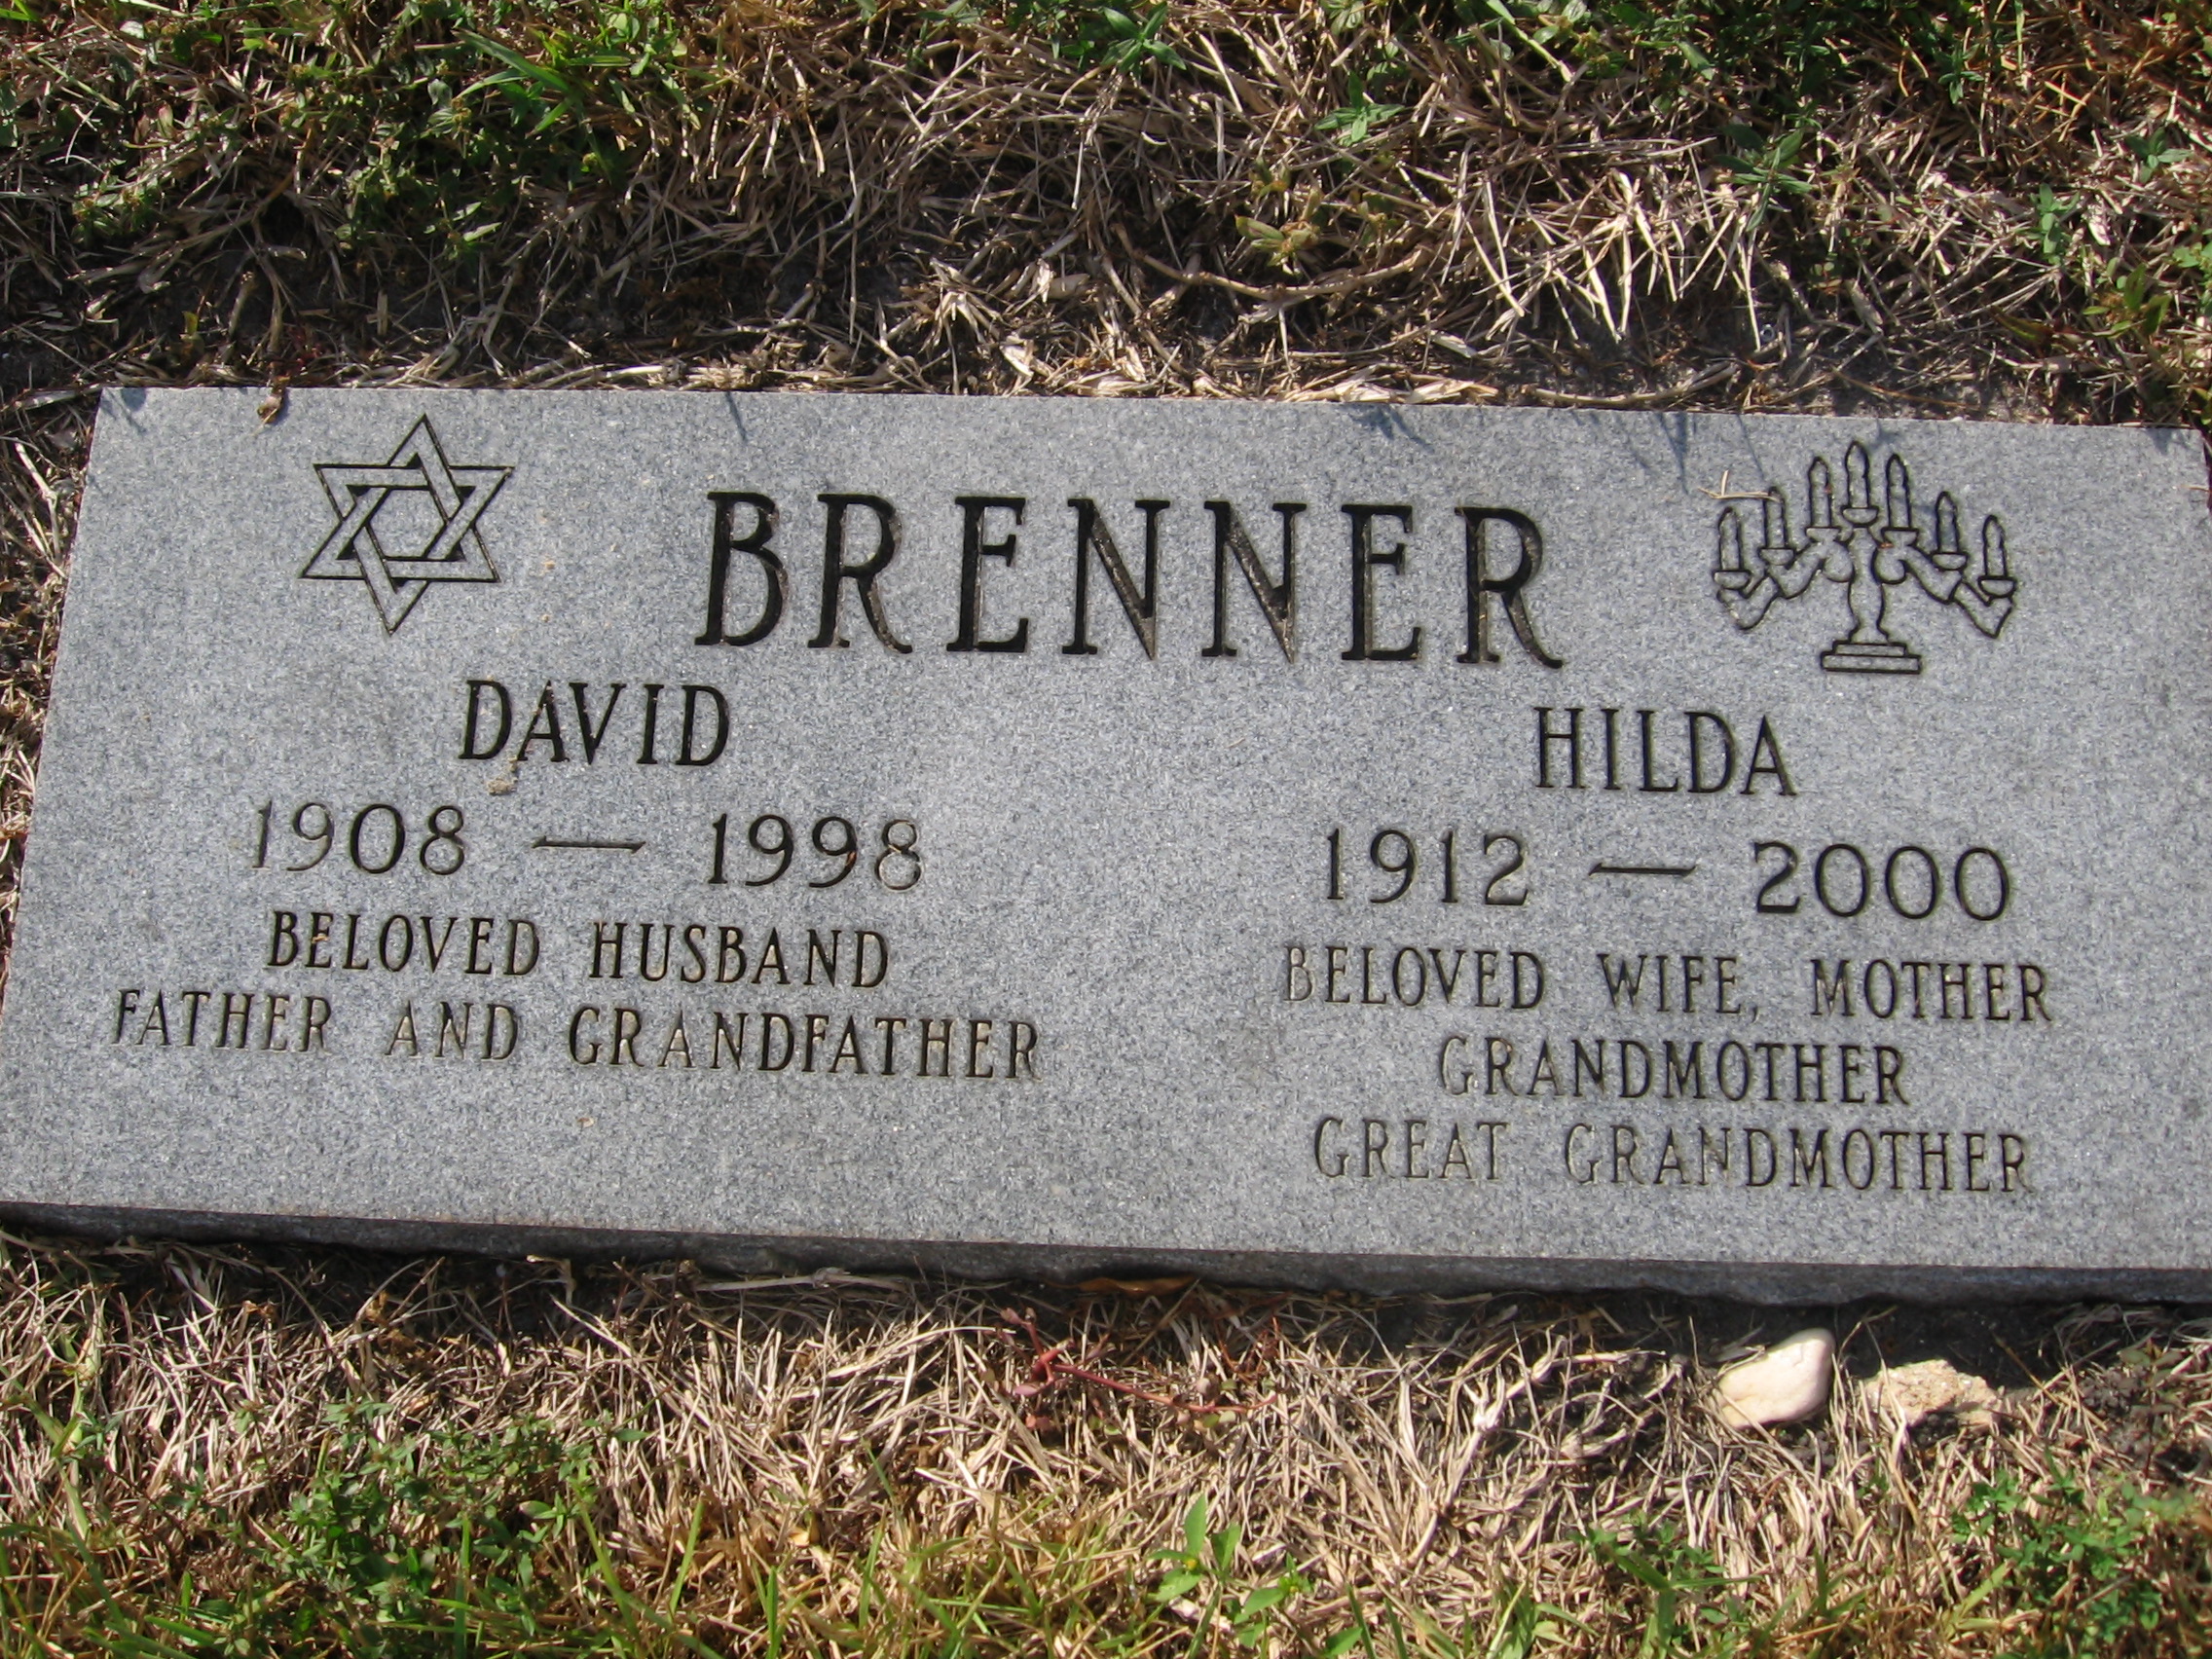 Hilda Brenner